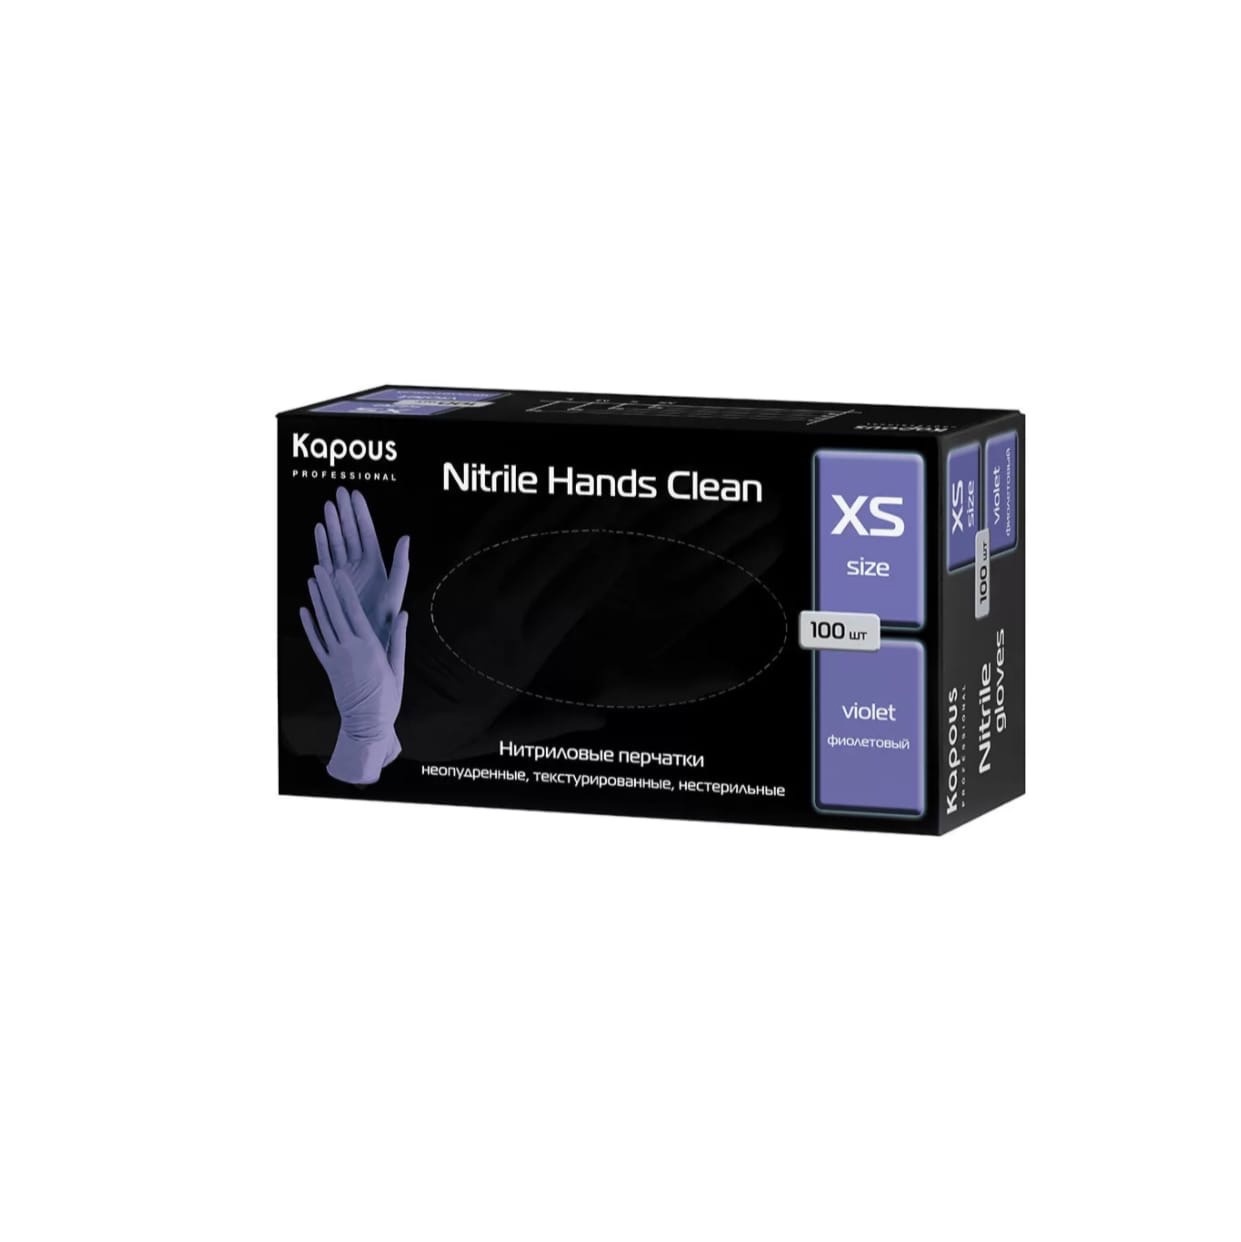 KAPOUS, Нитриловые перчатки неопудренные текстурированные нестерильные фиолетовые XS, 100 шт.